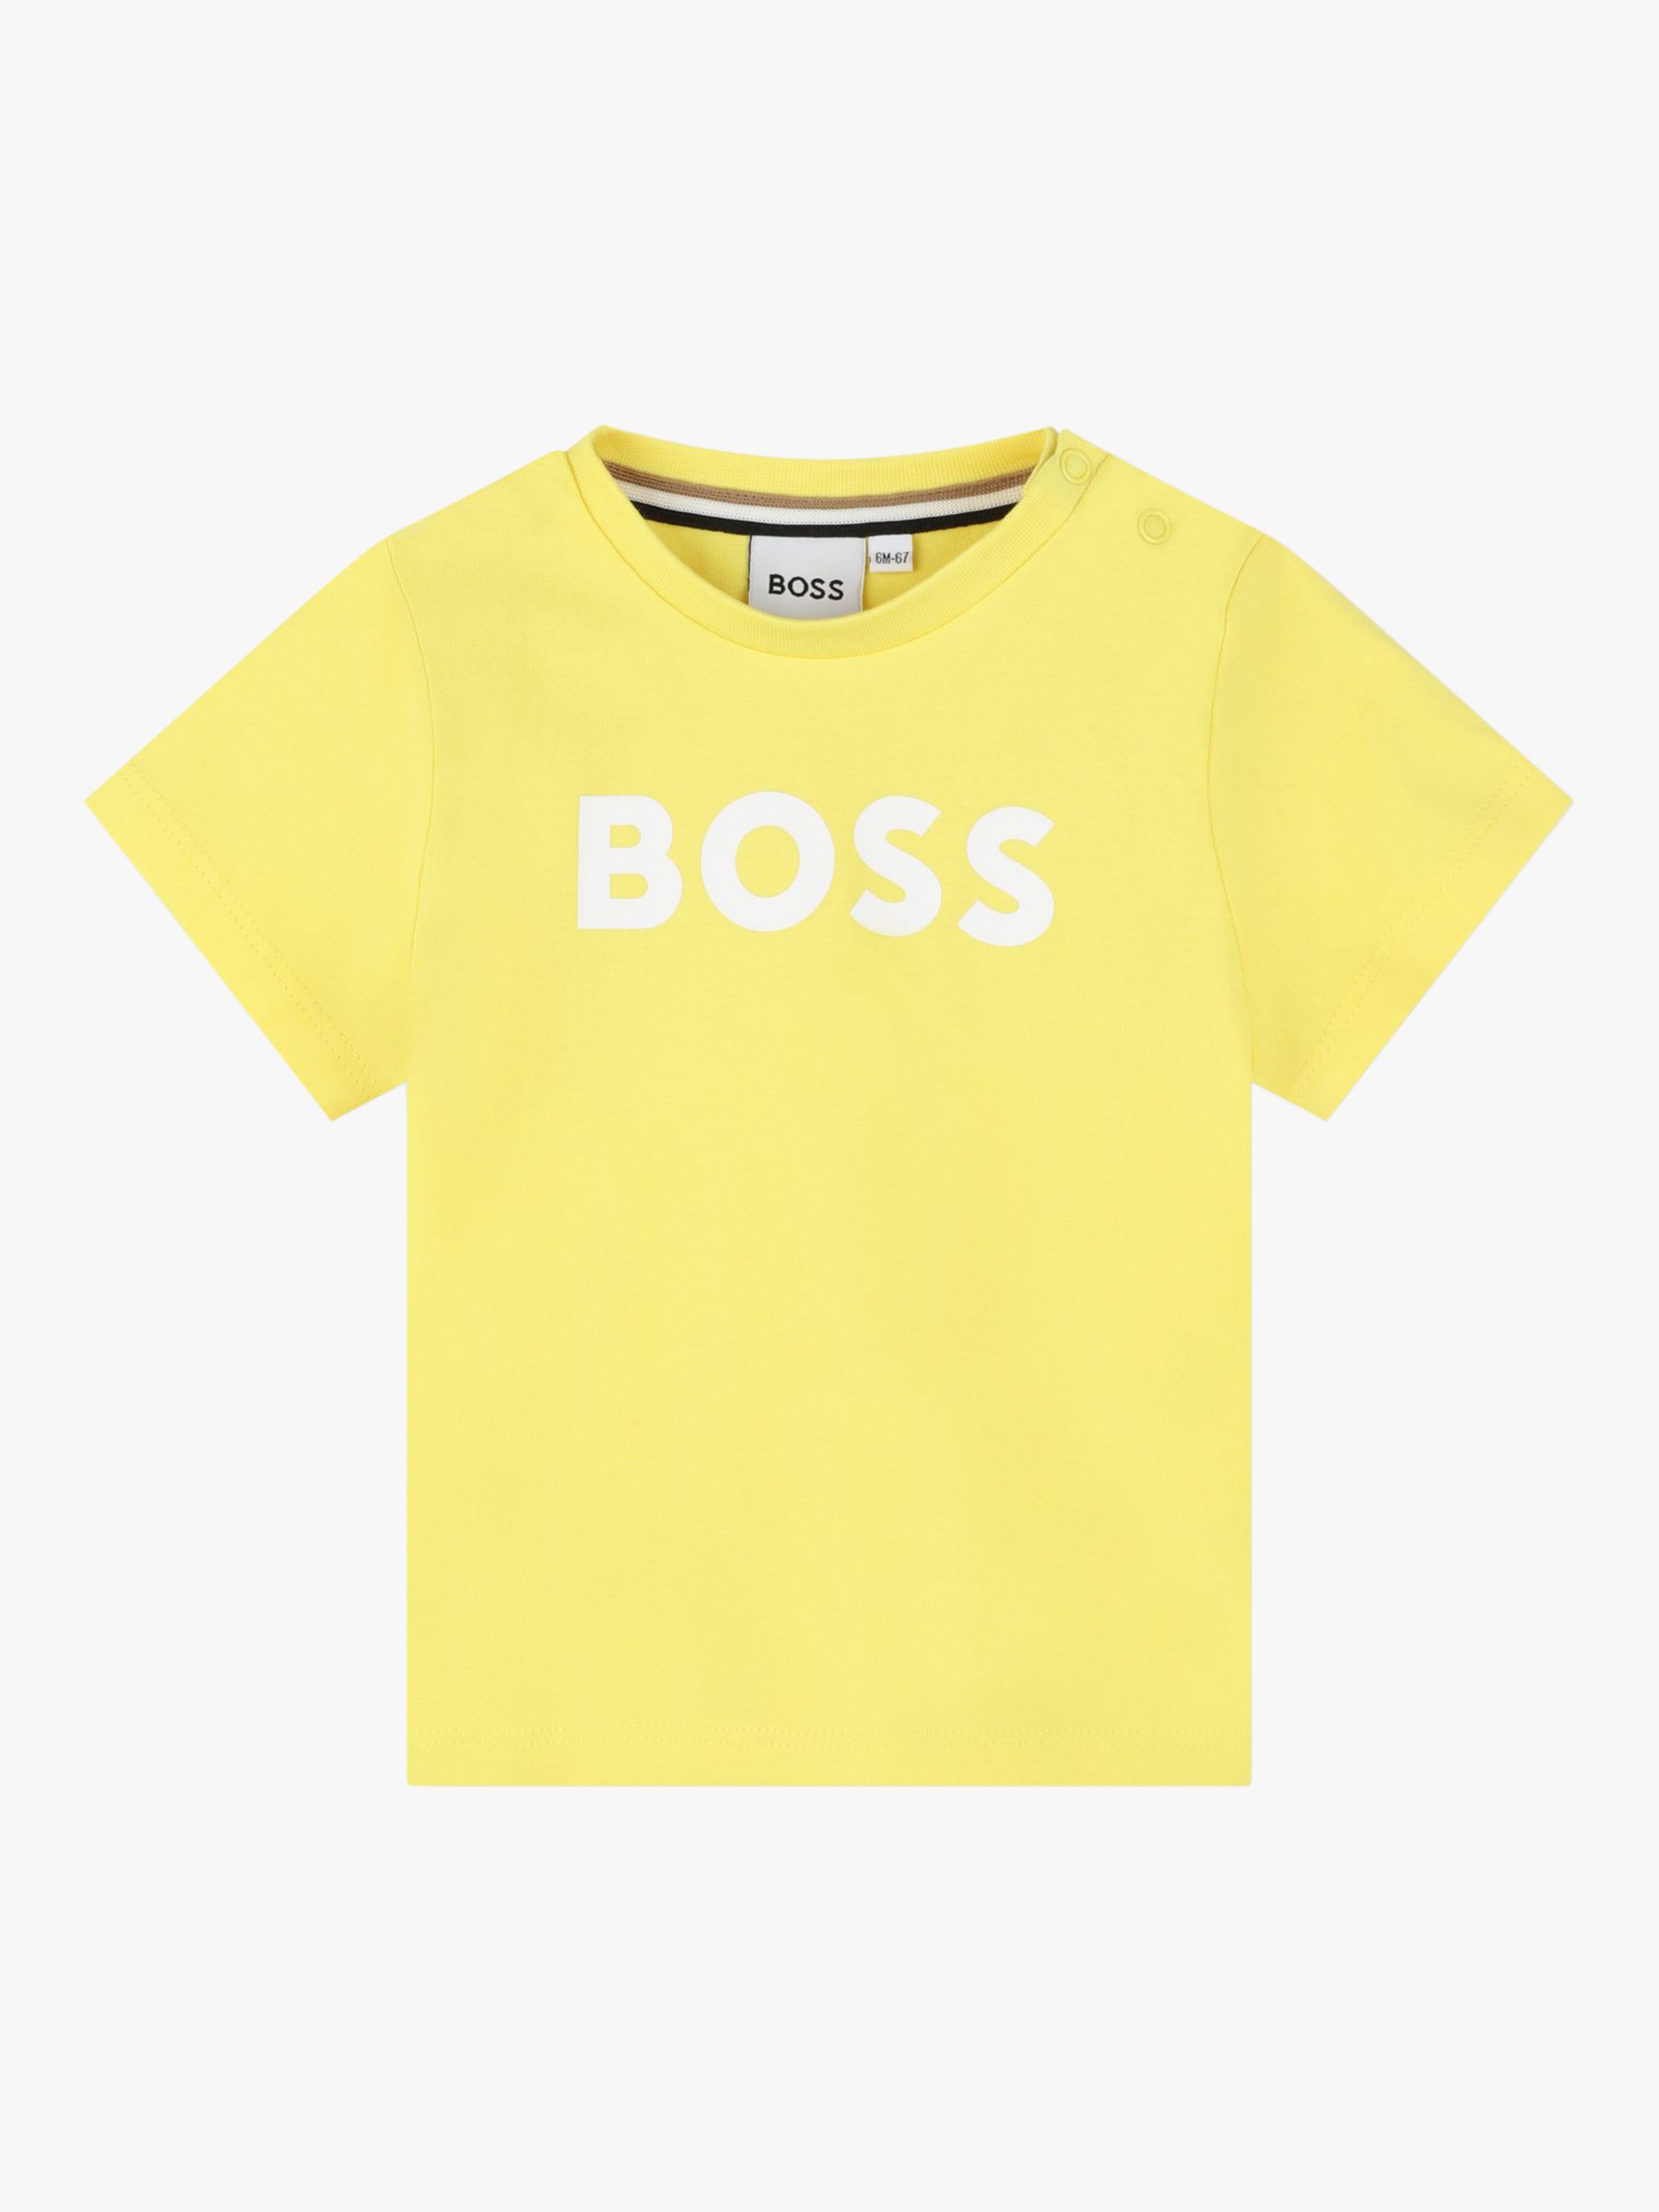 BOSS Baby Short Sleeve T-Shirt, Yellow, 2 years